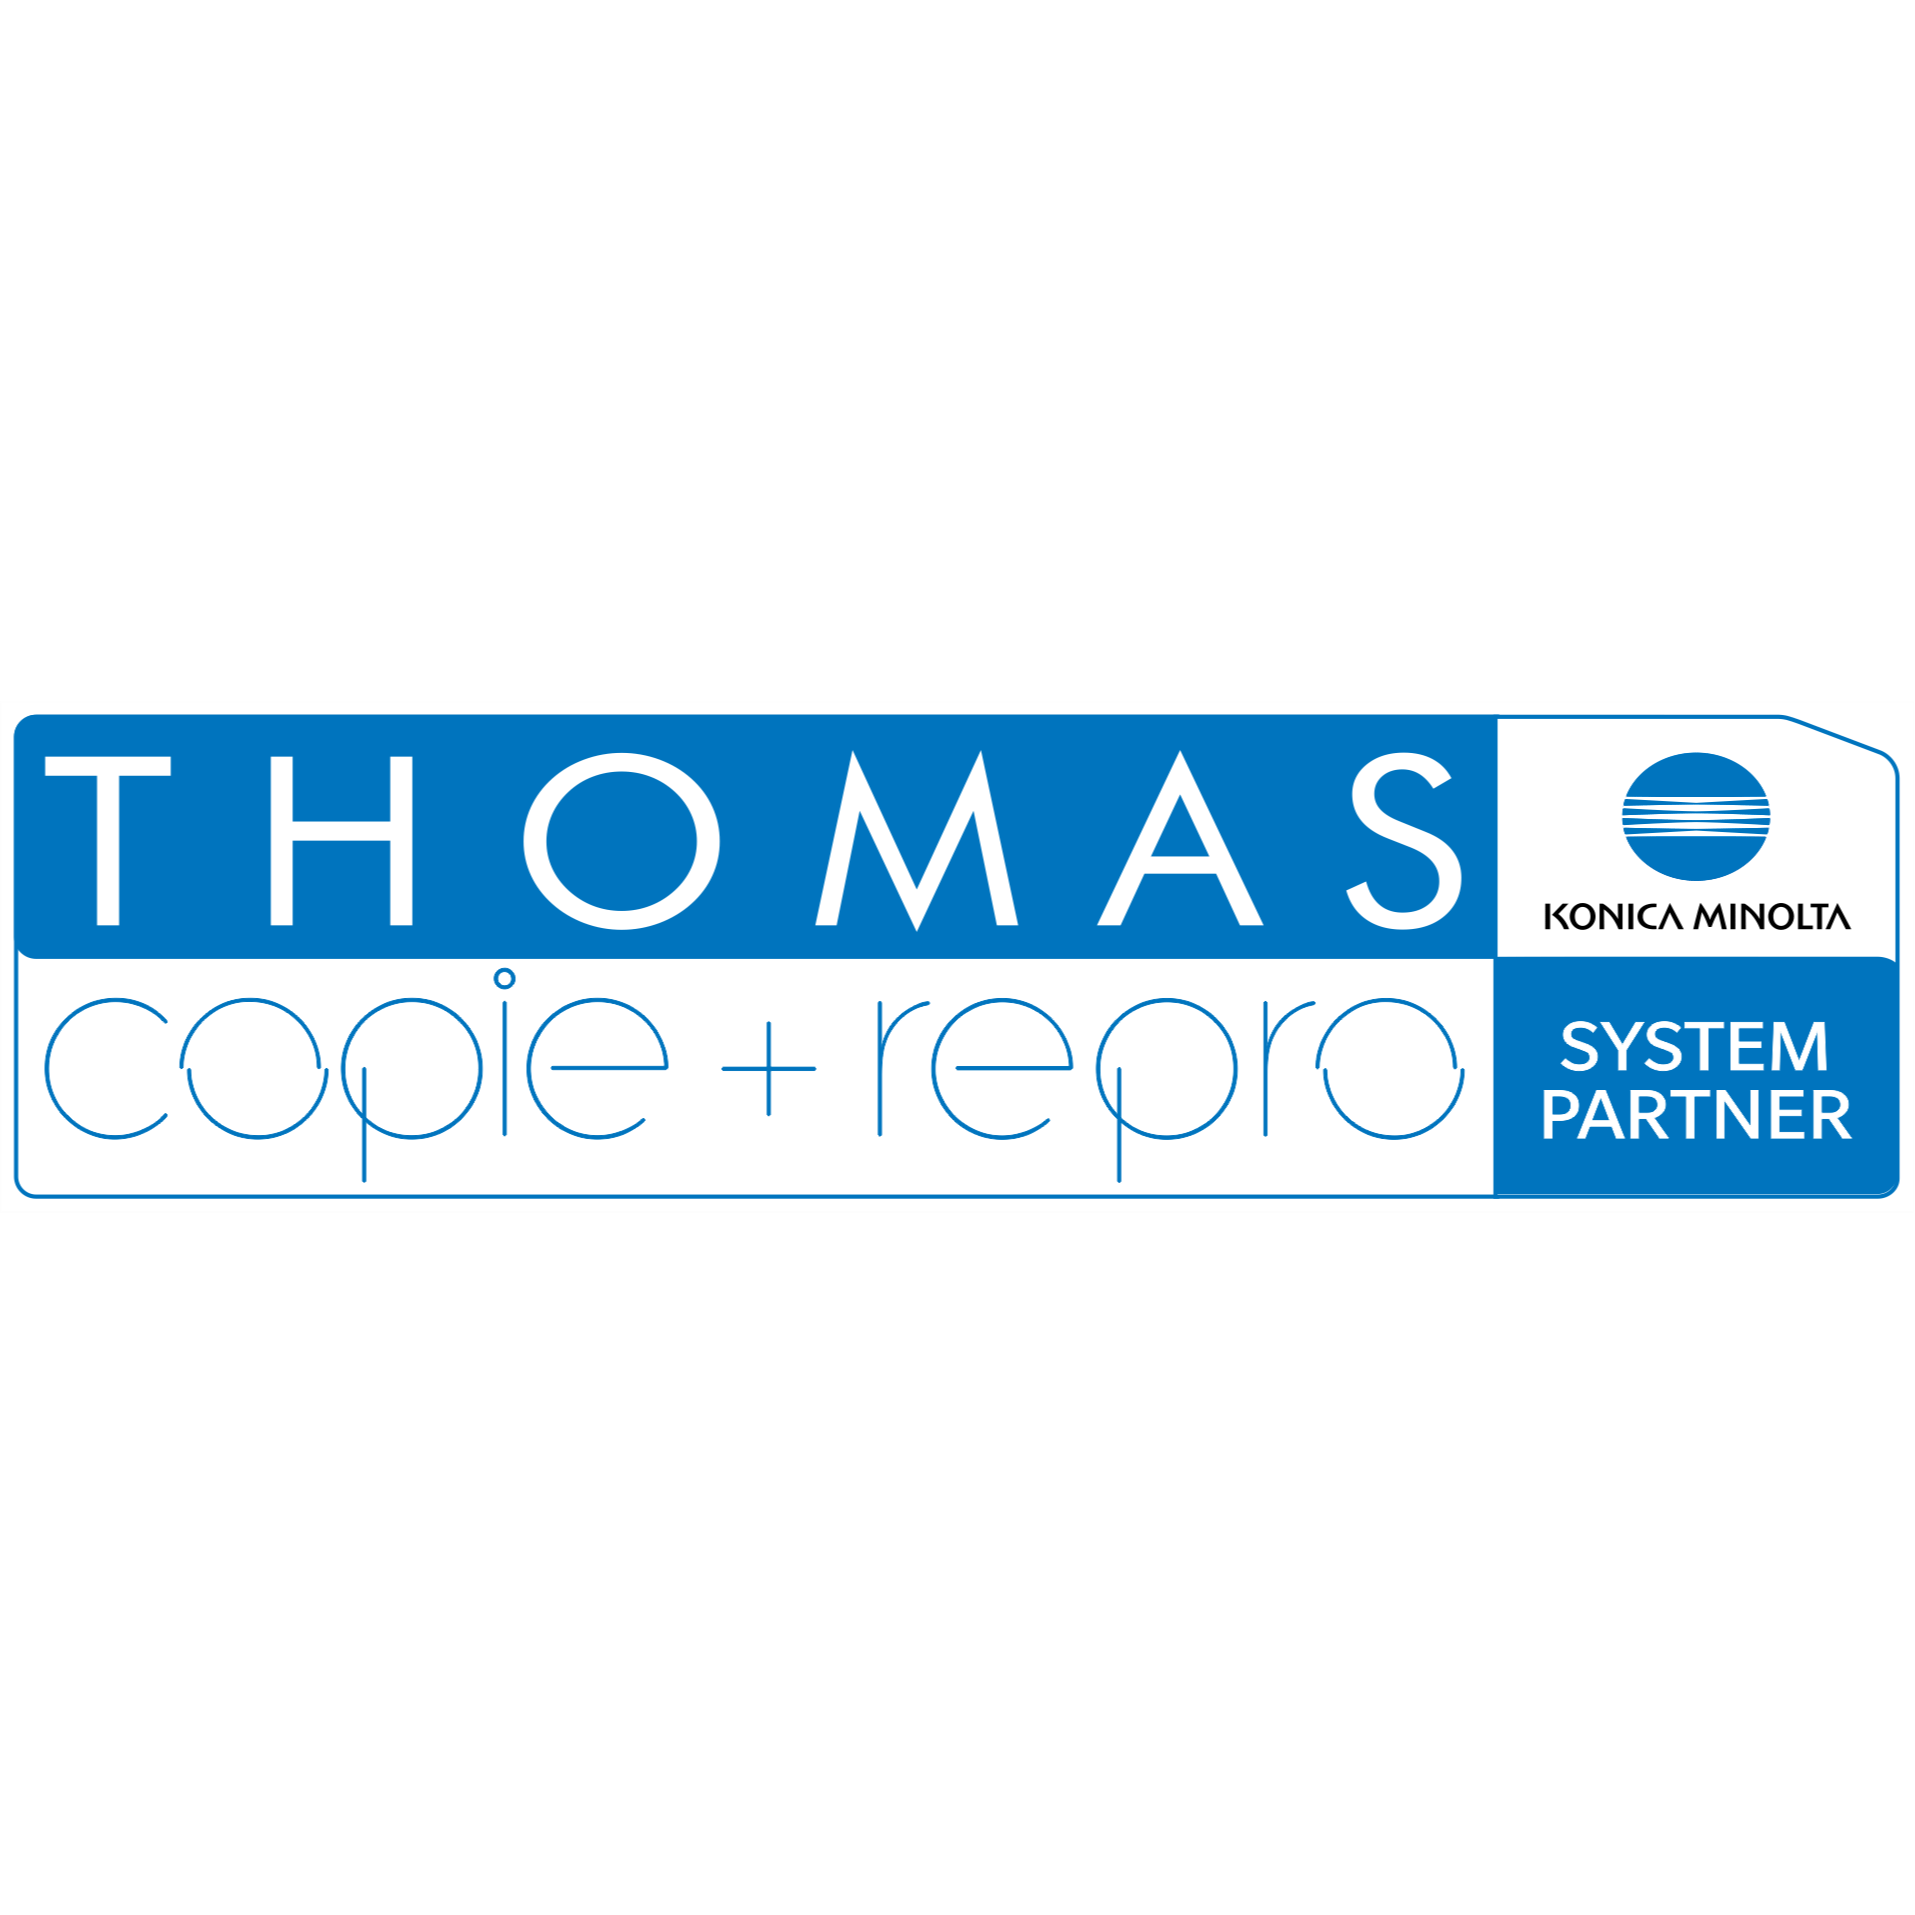 Logo THOMAS copie + repro e.K. | Copyshop | Druck-, Scan- und Kopierdienstleistungen